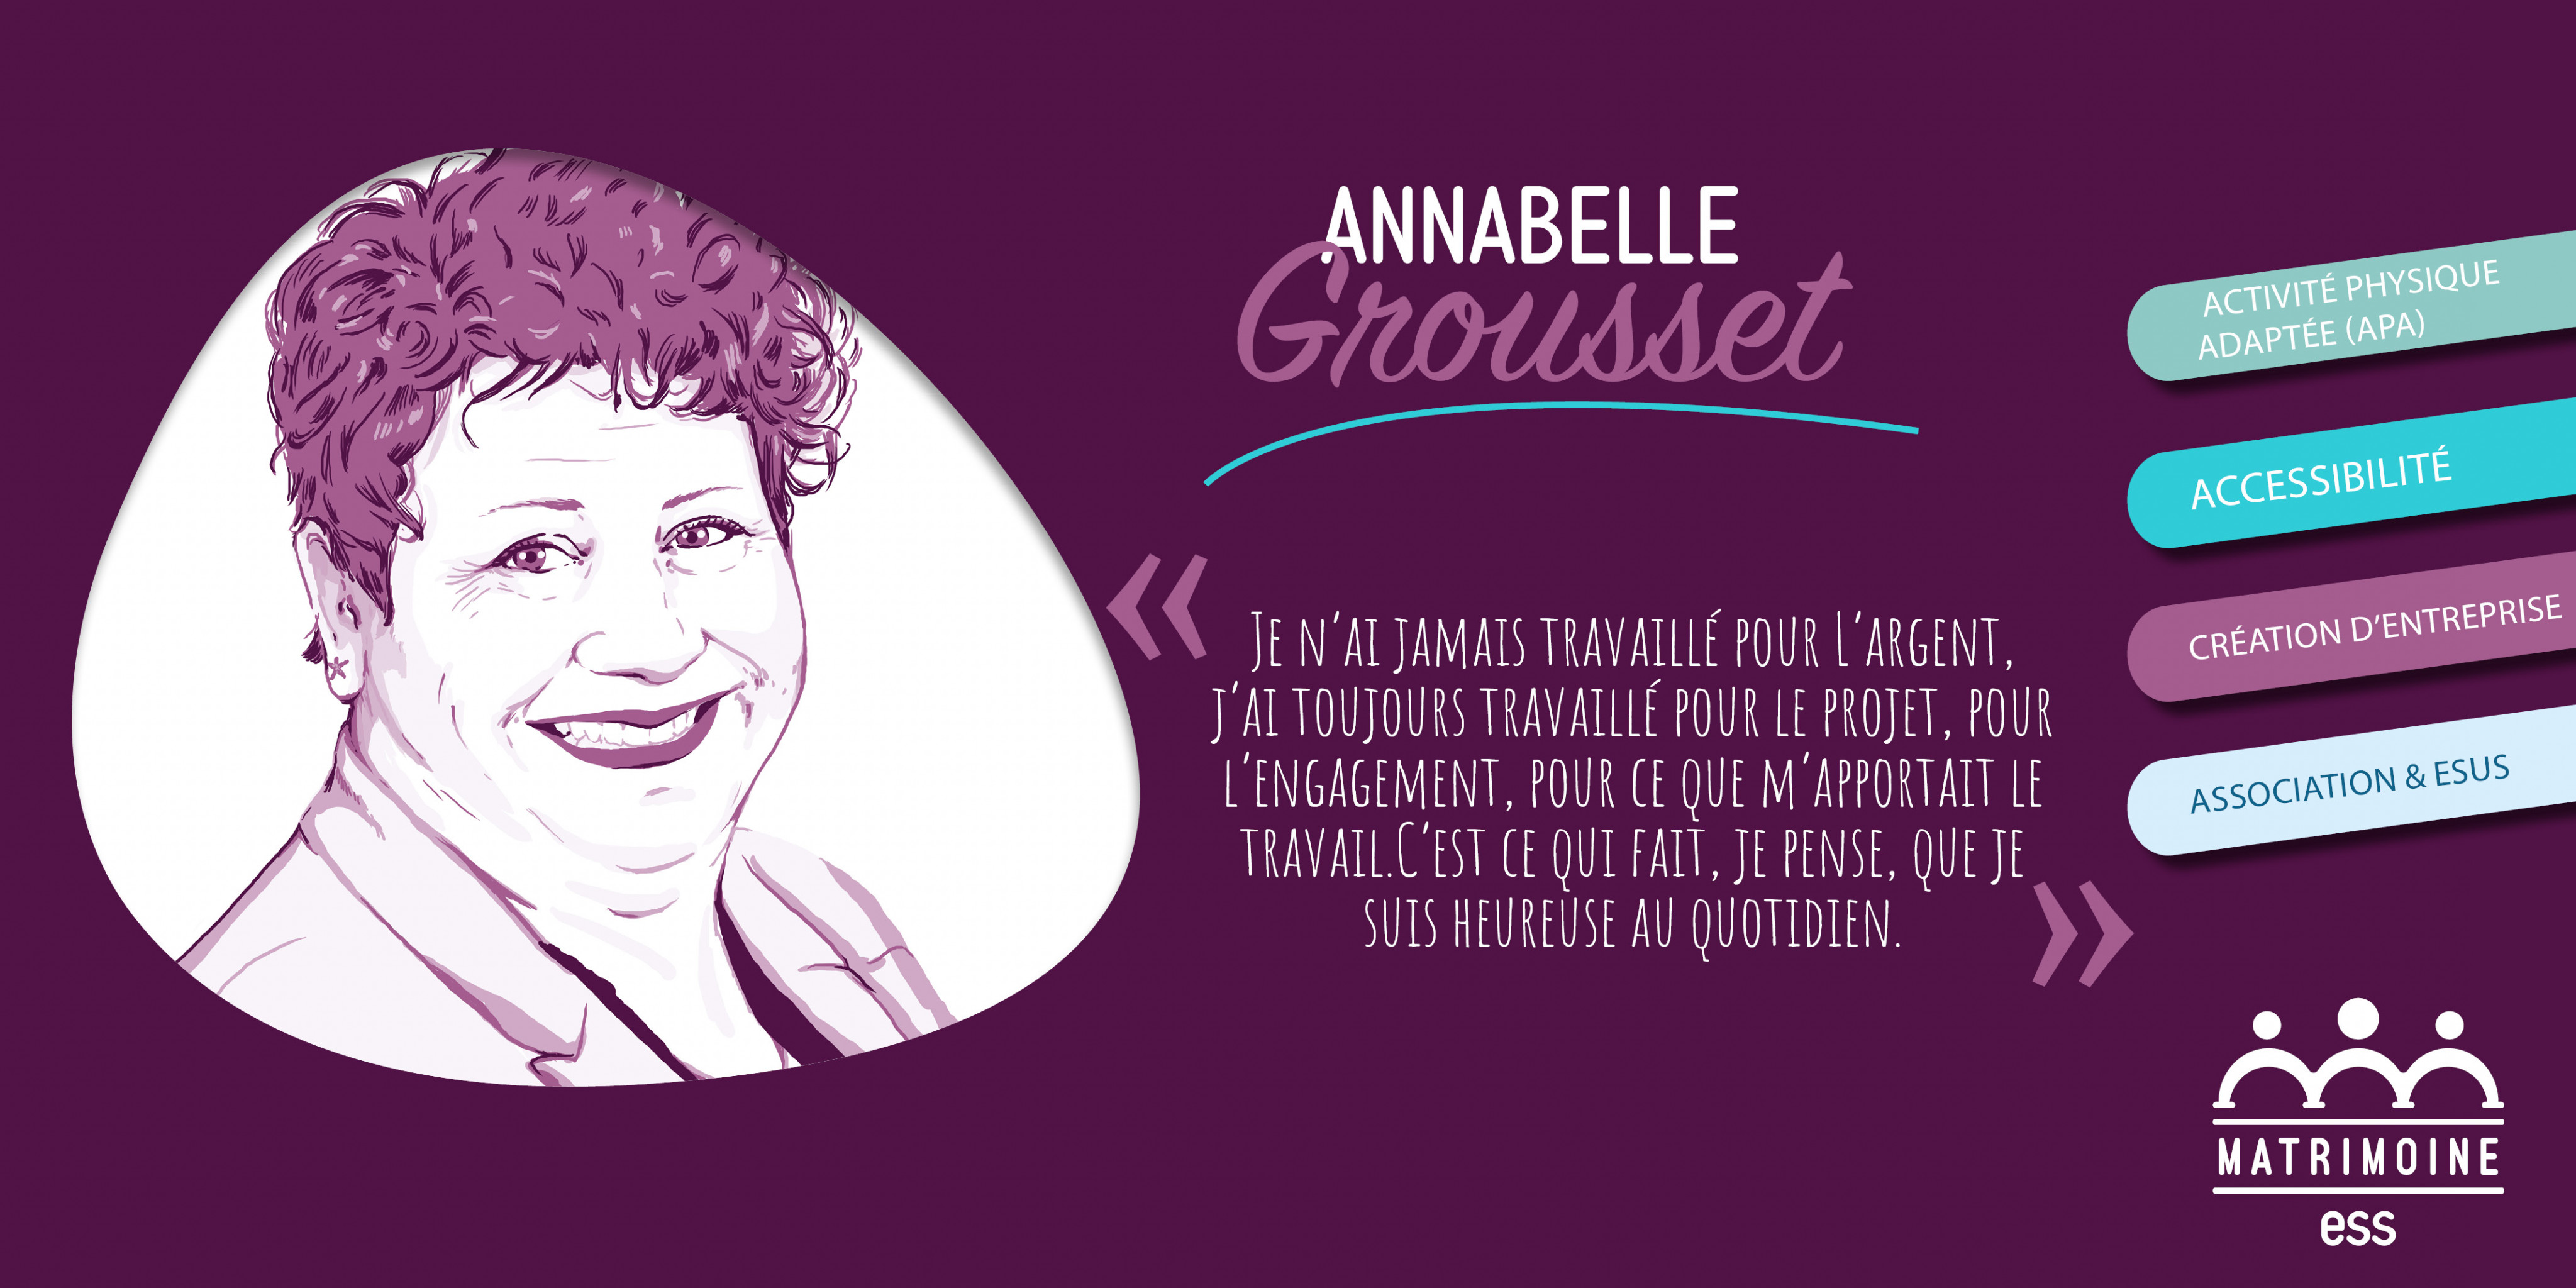 Portrait de Annabelle Grousset, Fondatrice de APA de Géant